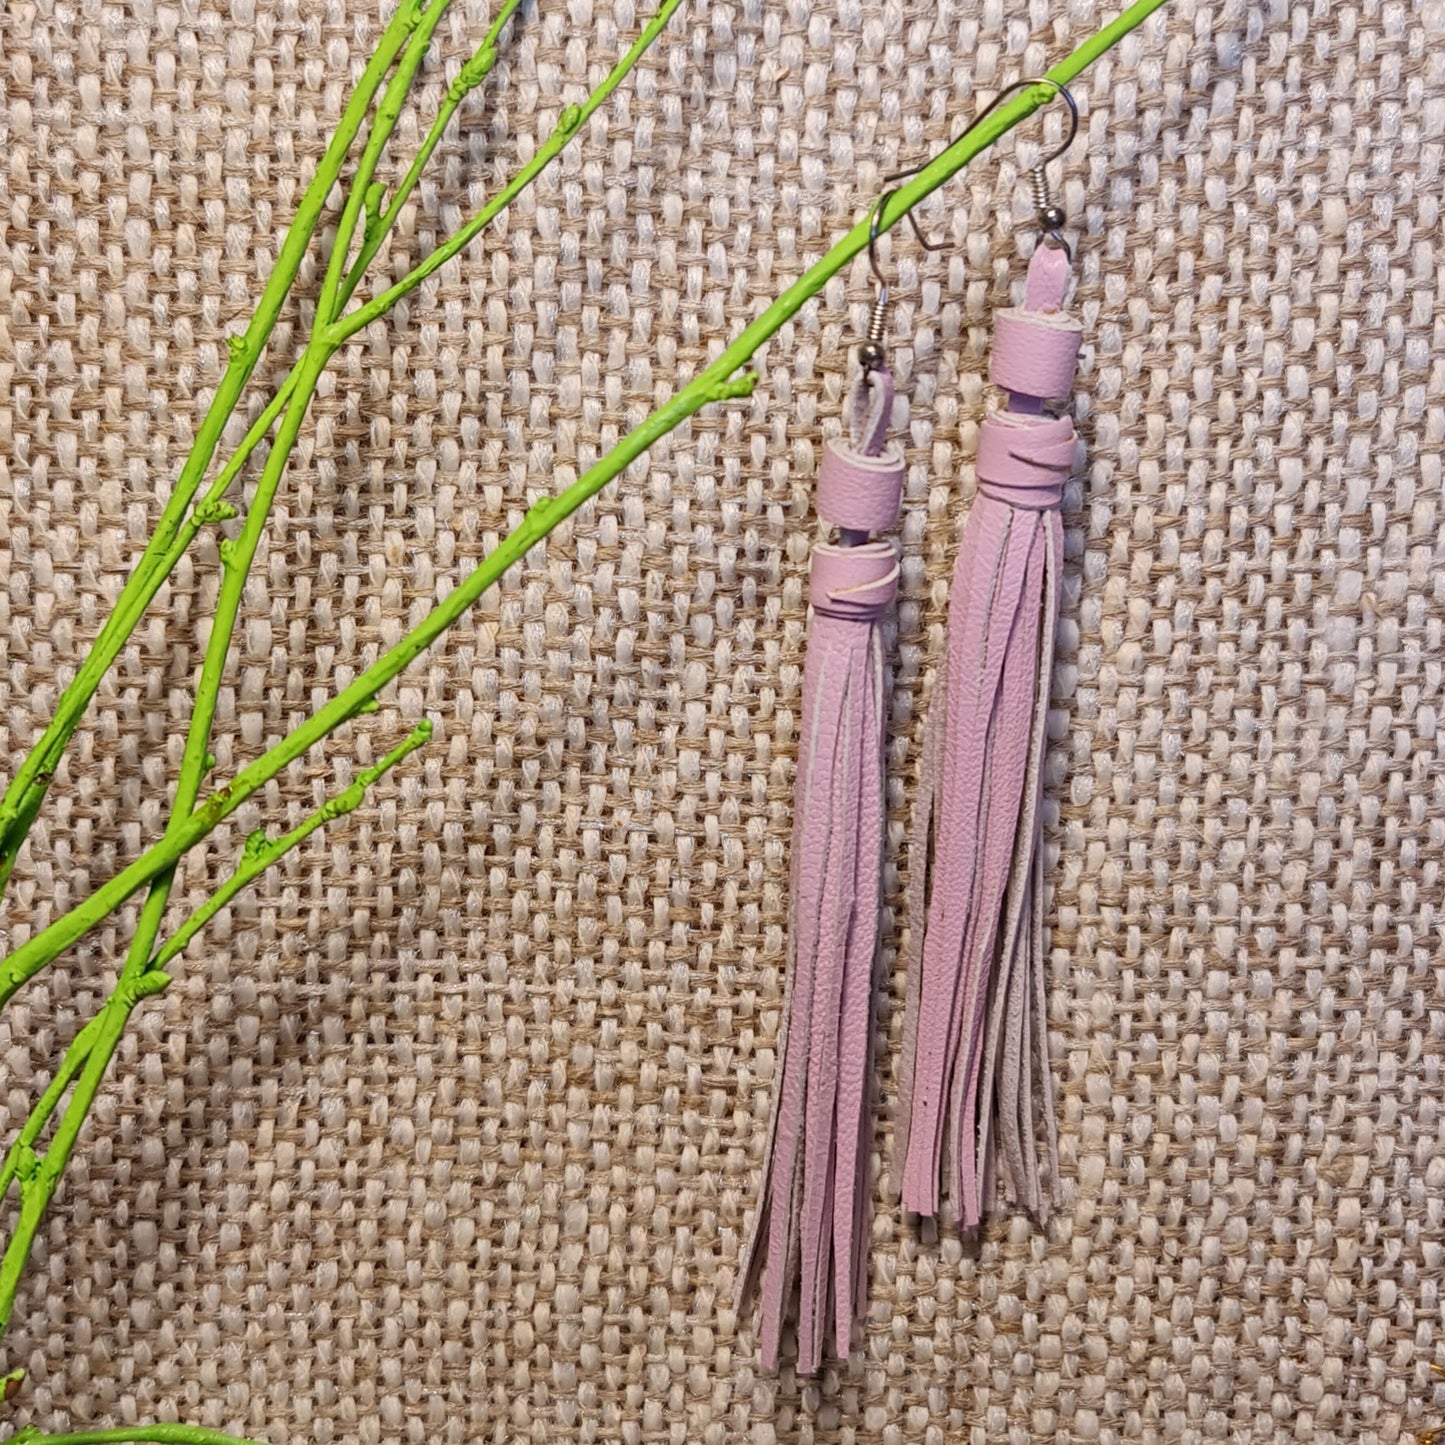 Viegli ādas skariņveida auskari gaiši / maigi rozā krāsā no vienāda garuma ādas josliņām (garums 13 cm) augšējā rinda 5. no kreisās puses (JŠČ)